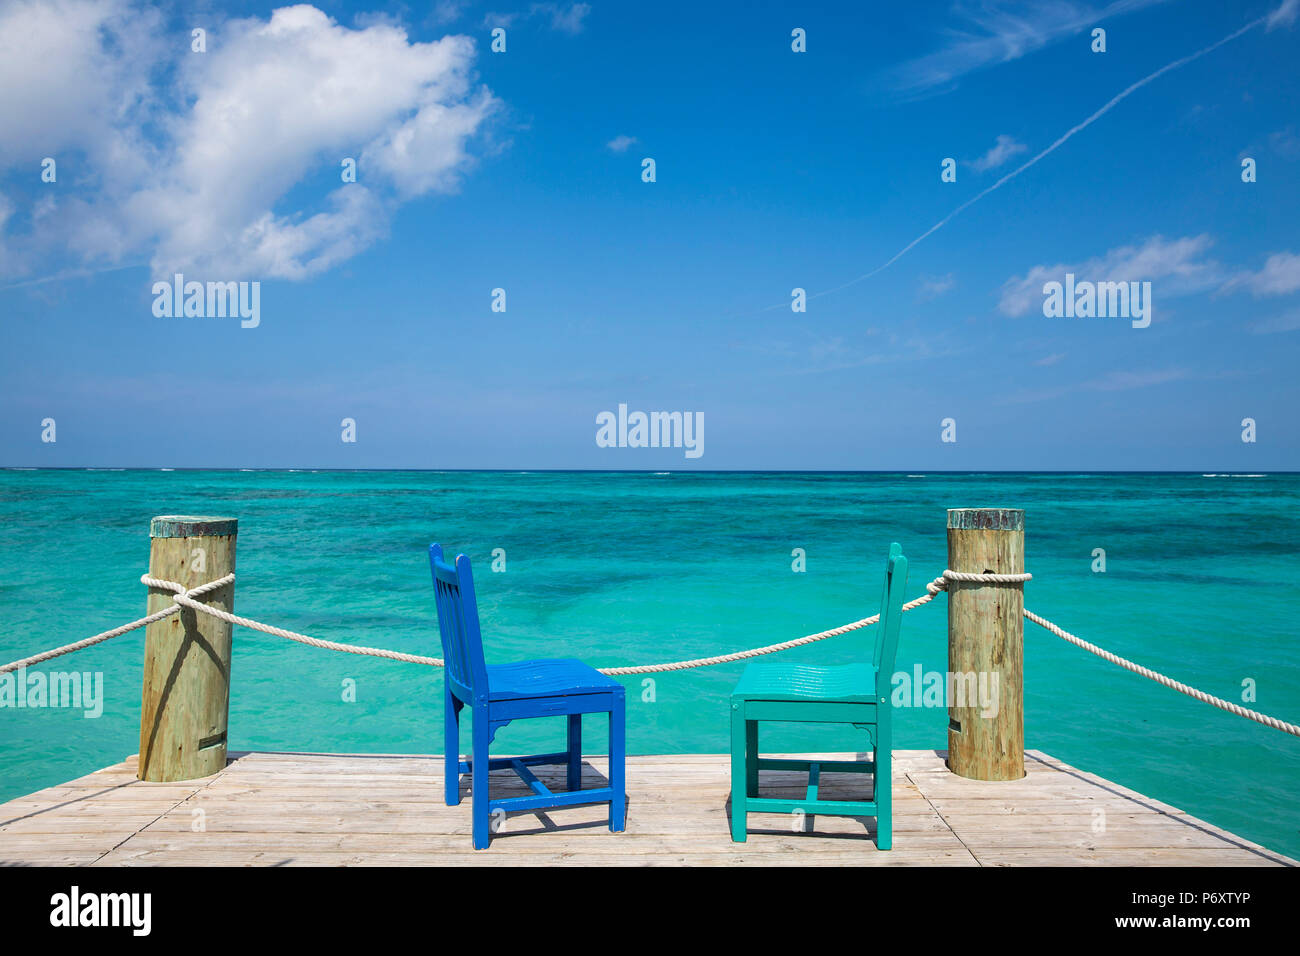 Caribbean, Bahamas, Providence Island, Pier Stock Photo